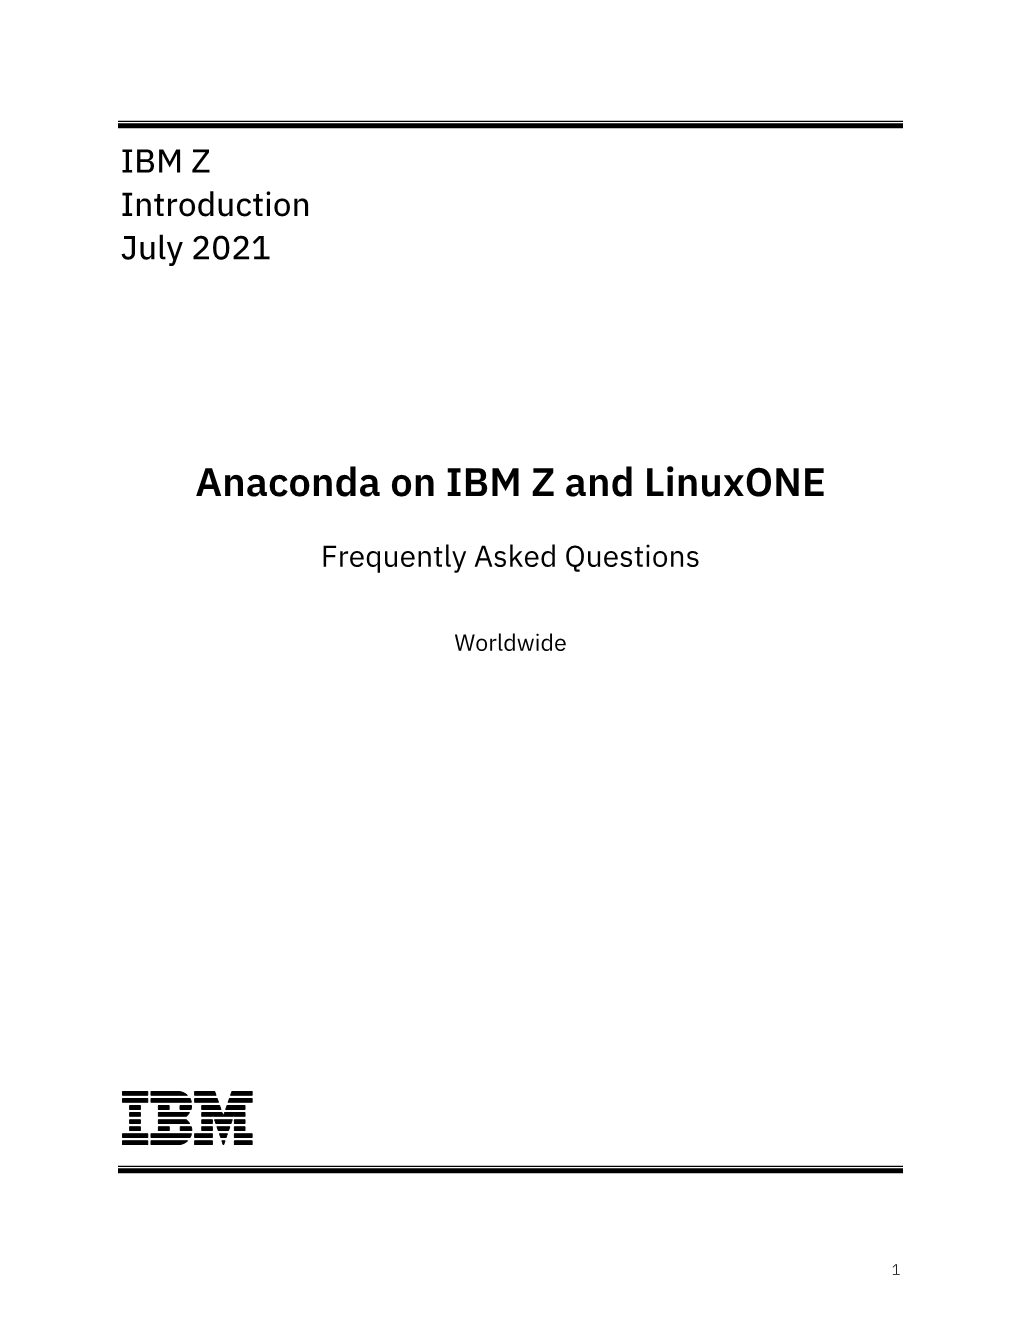 Anaconda on IBM Z and Linuxone